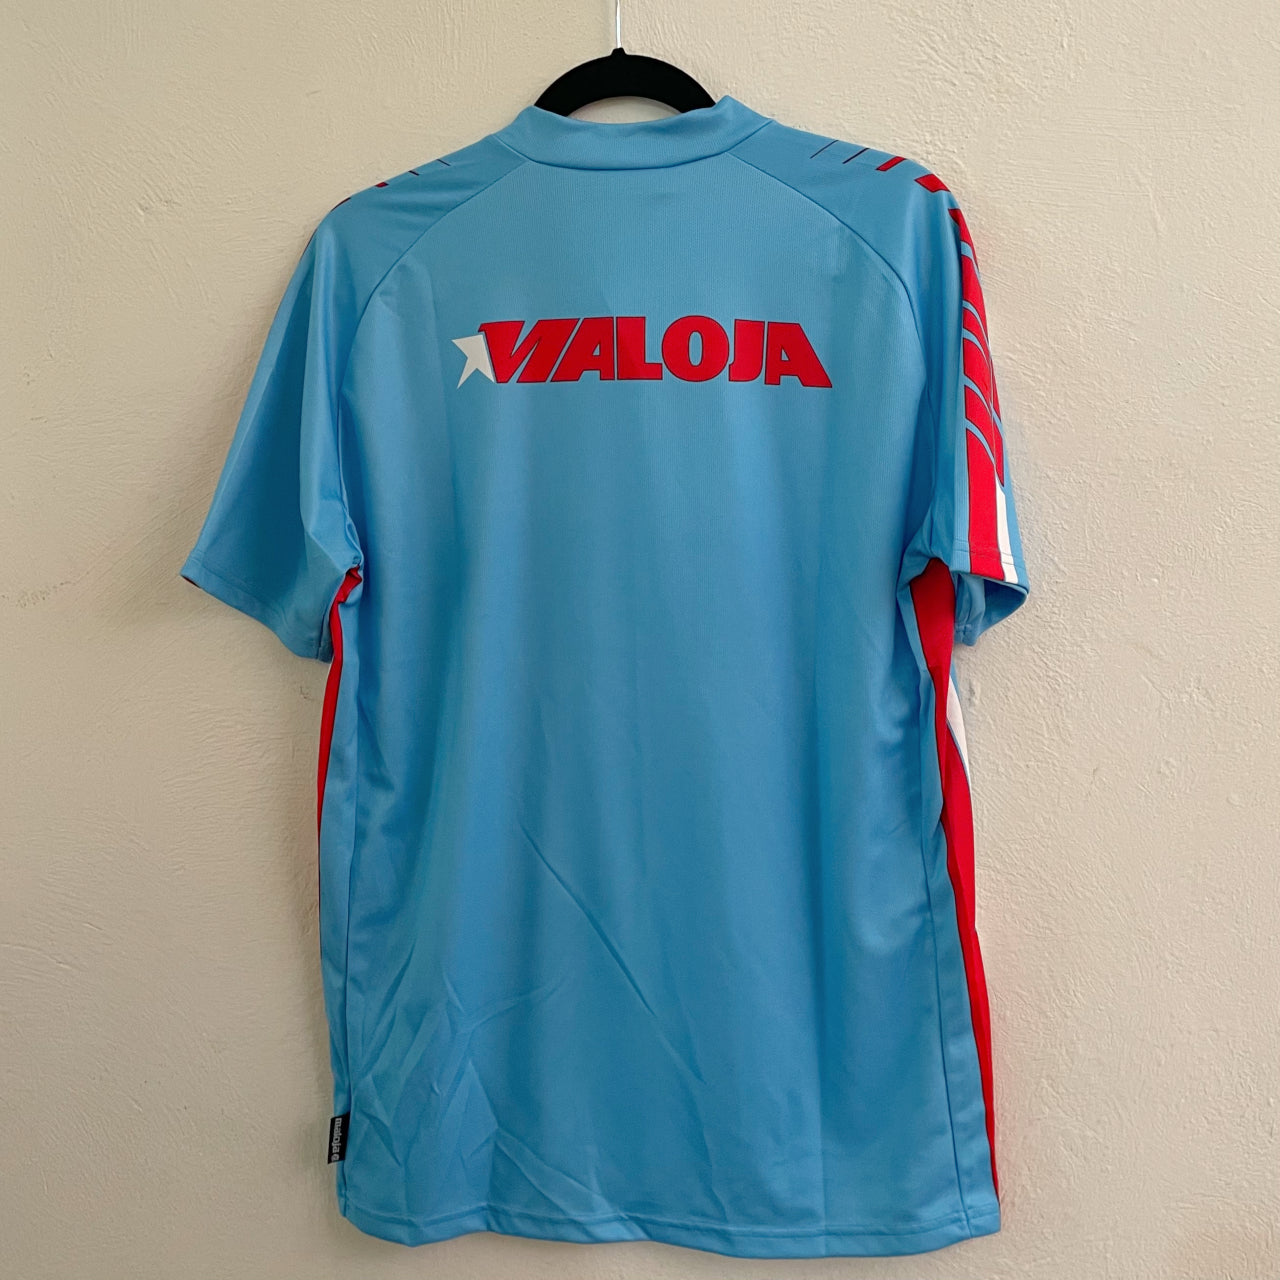 MALOJA Freeride Shirt 1/2 - 4 Speed - sky - M